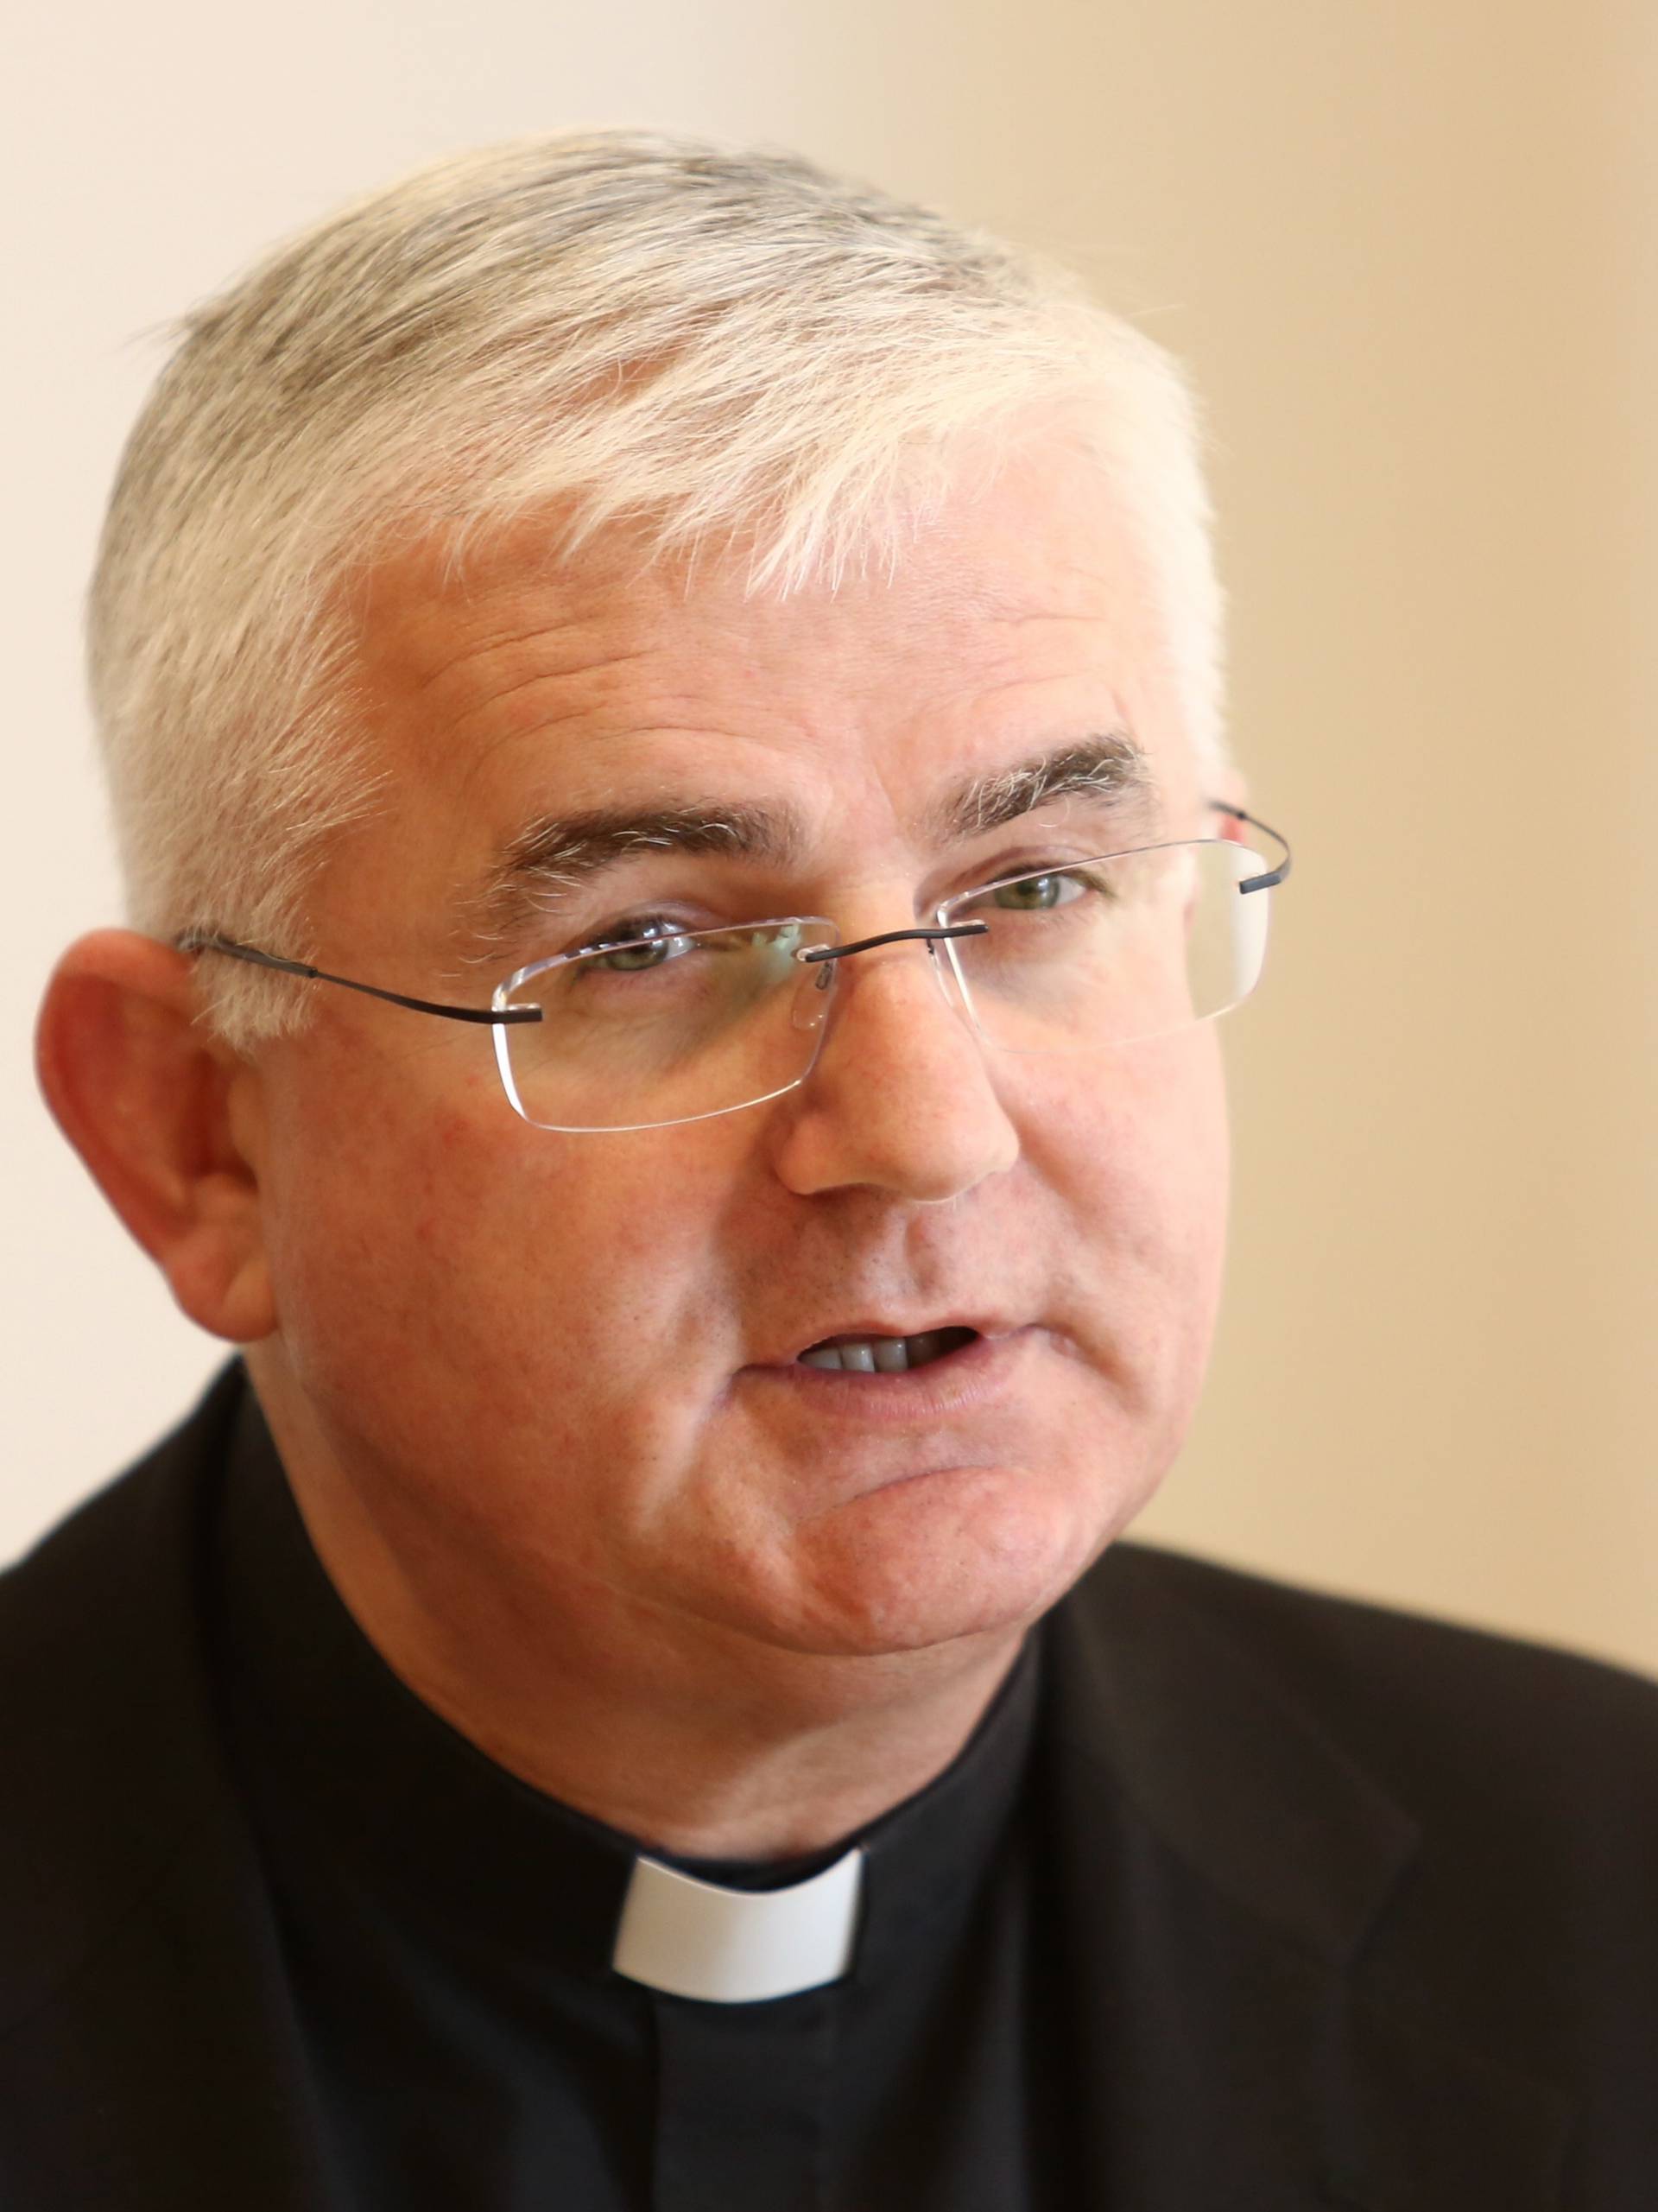 Biskup Uzinić: Tjerati ljude iz Crkve nije u duhu Evanđelja